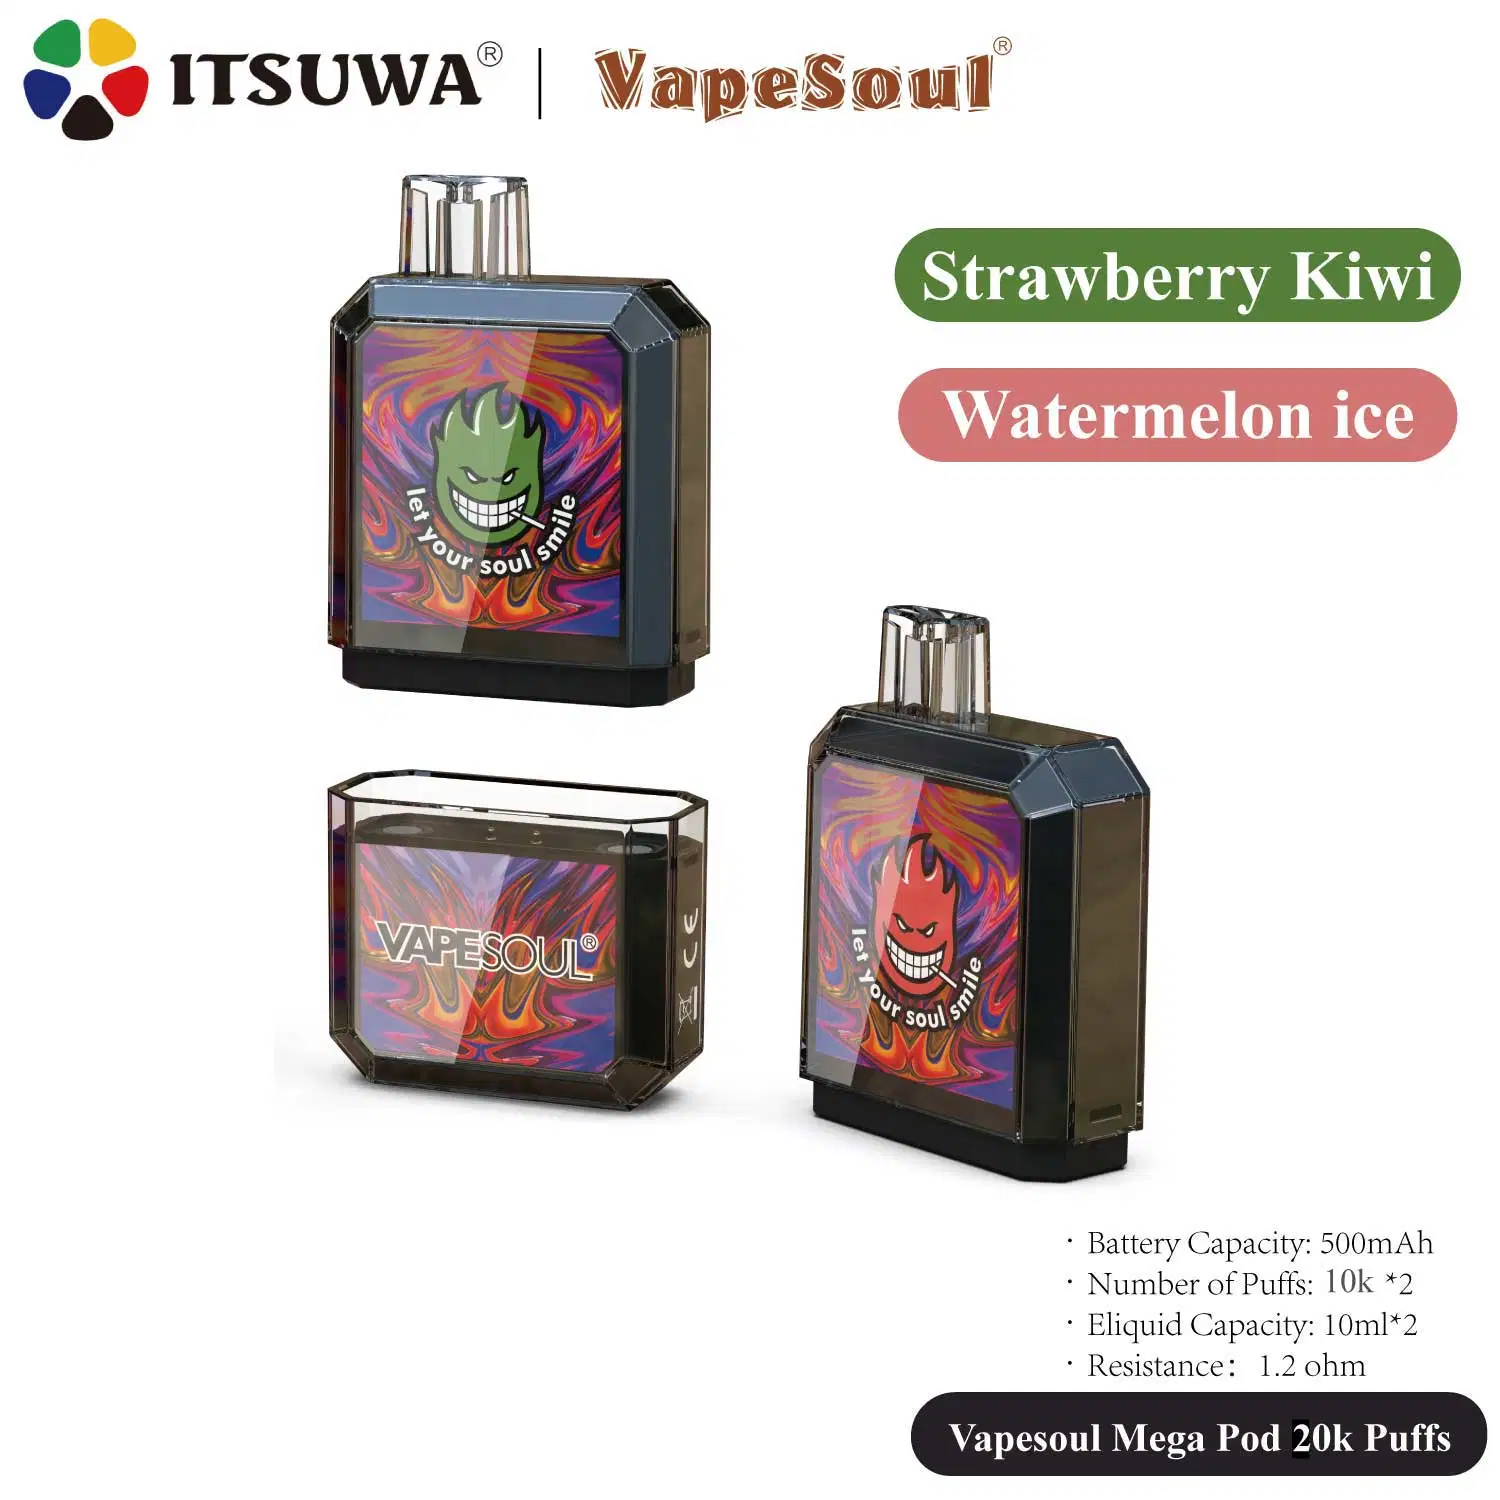 Itsuwa Vapesoul Mega Pod 10000 Puffs Wholesale Vape Pen Smoking Accessories